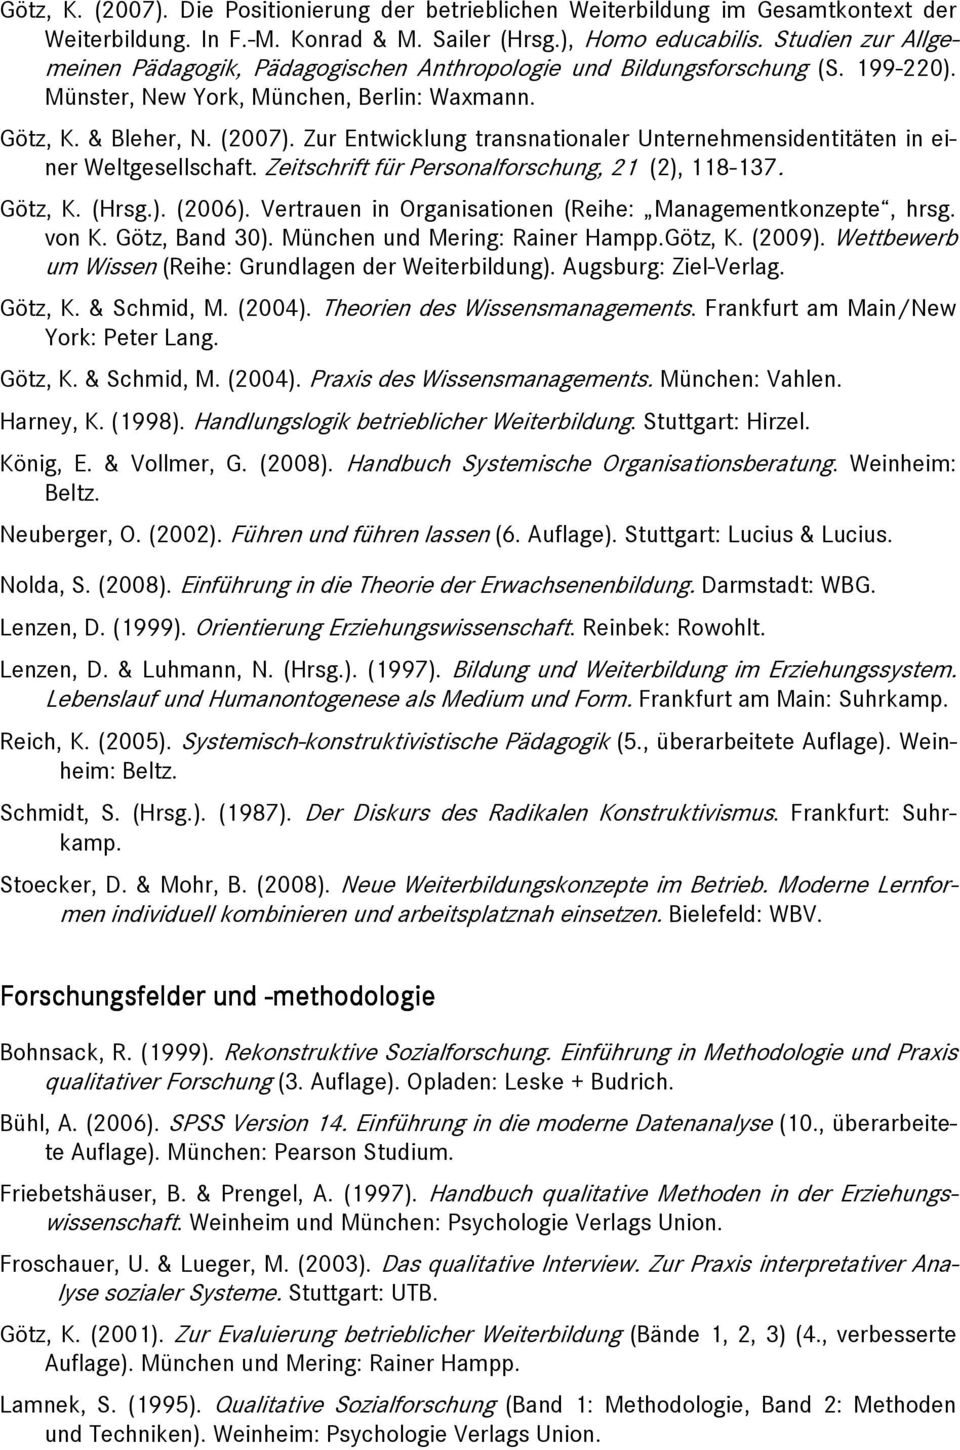 Zur Entwicklung transnationaler Unternehmensidentitäten in einer Weltgesellschaft. Zeitschrift für Personalforschung, 21 (2), 118-137. Götz, K. (Hrsg.). (2006).